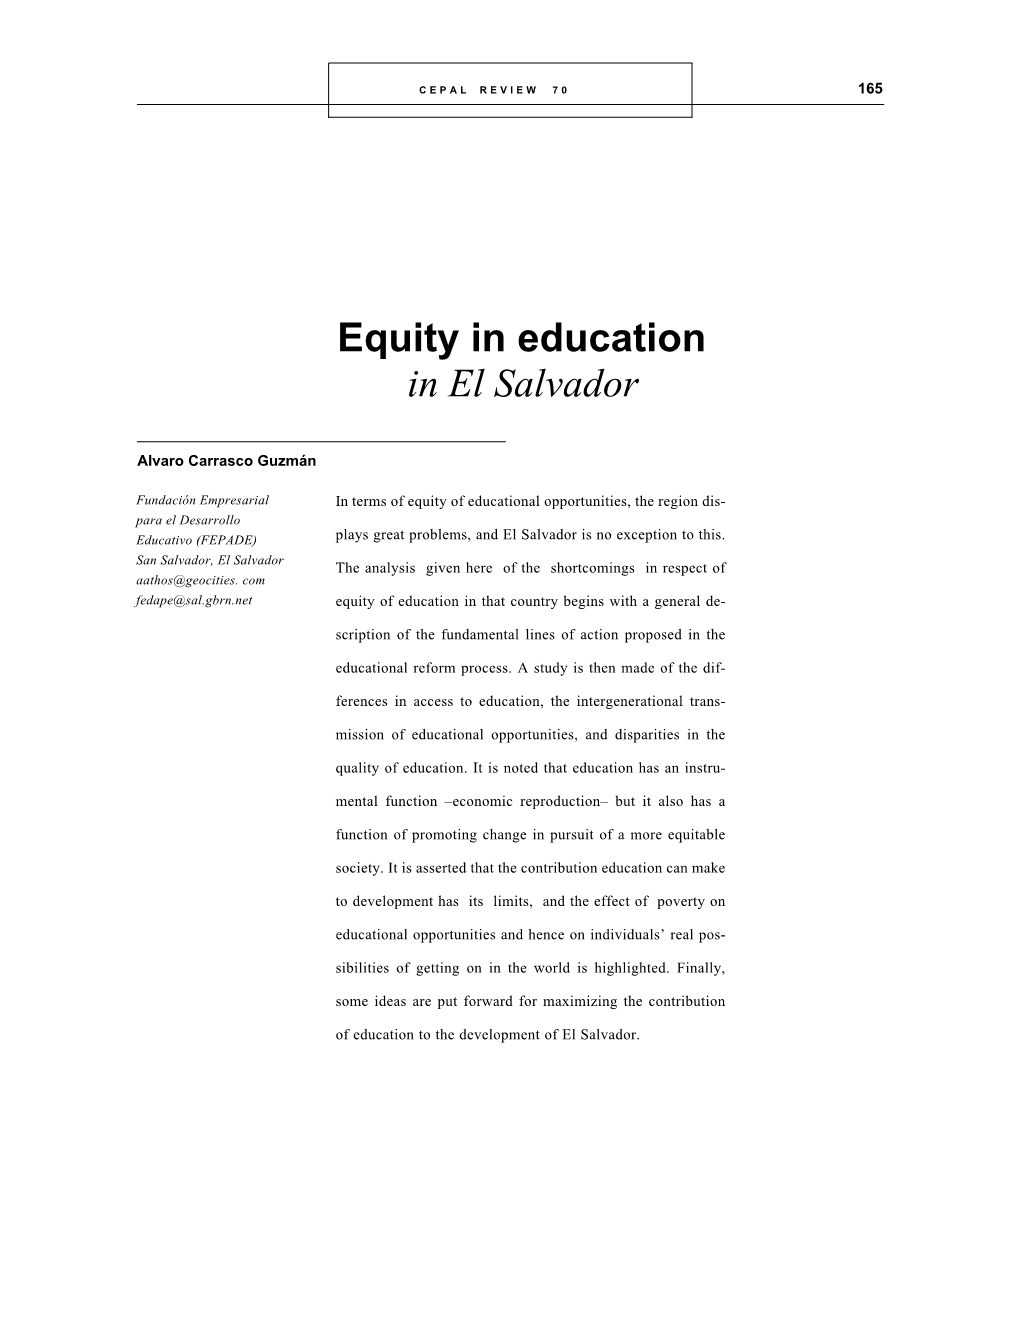 Equity in Education in El Salvador